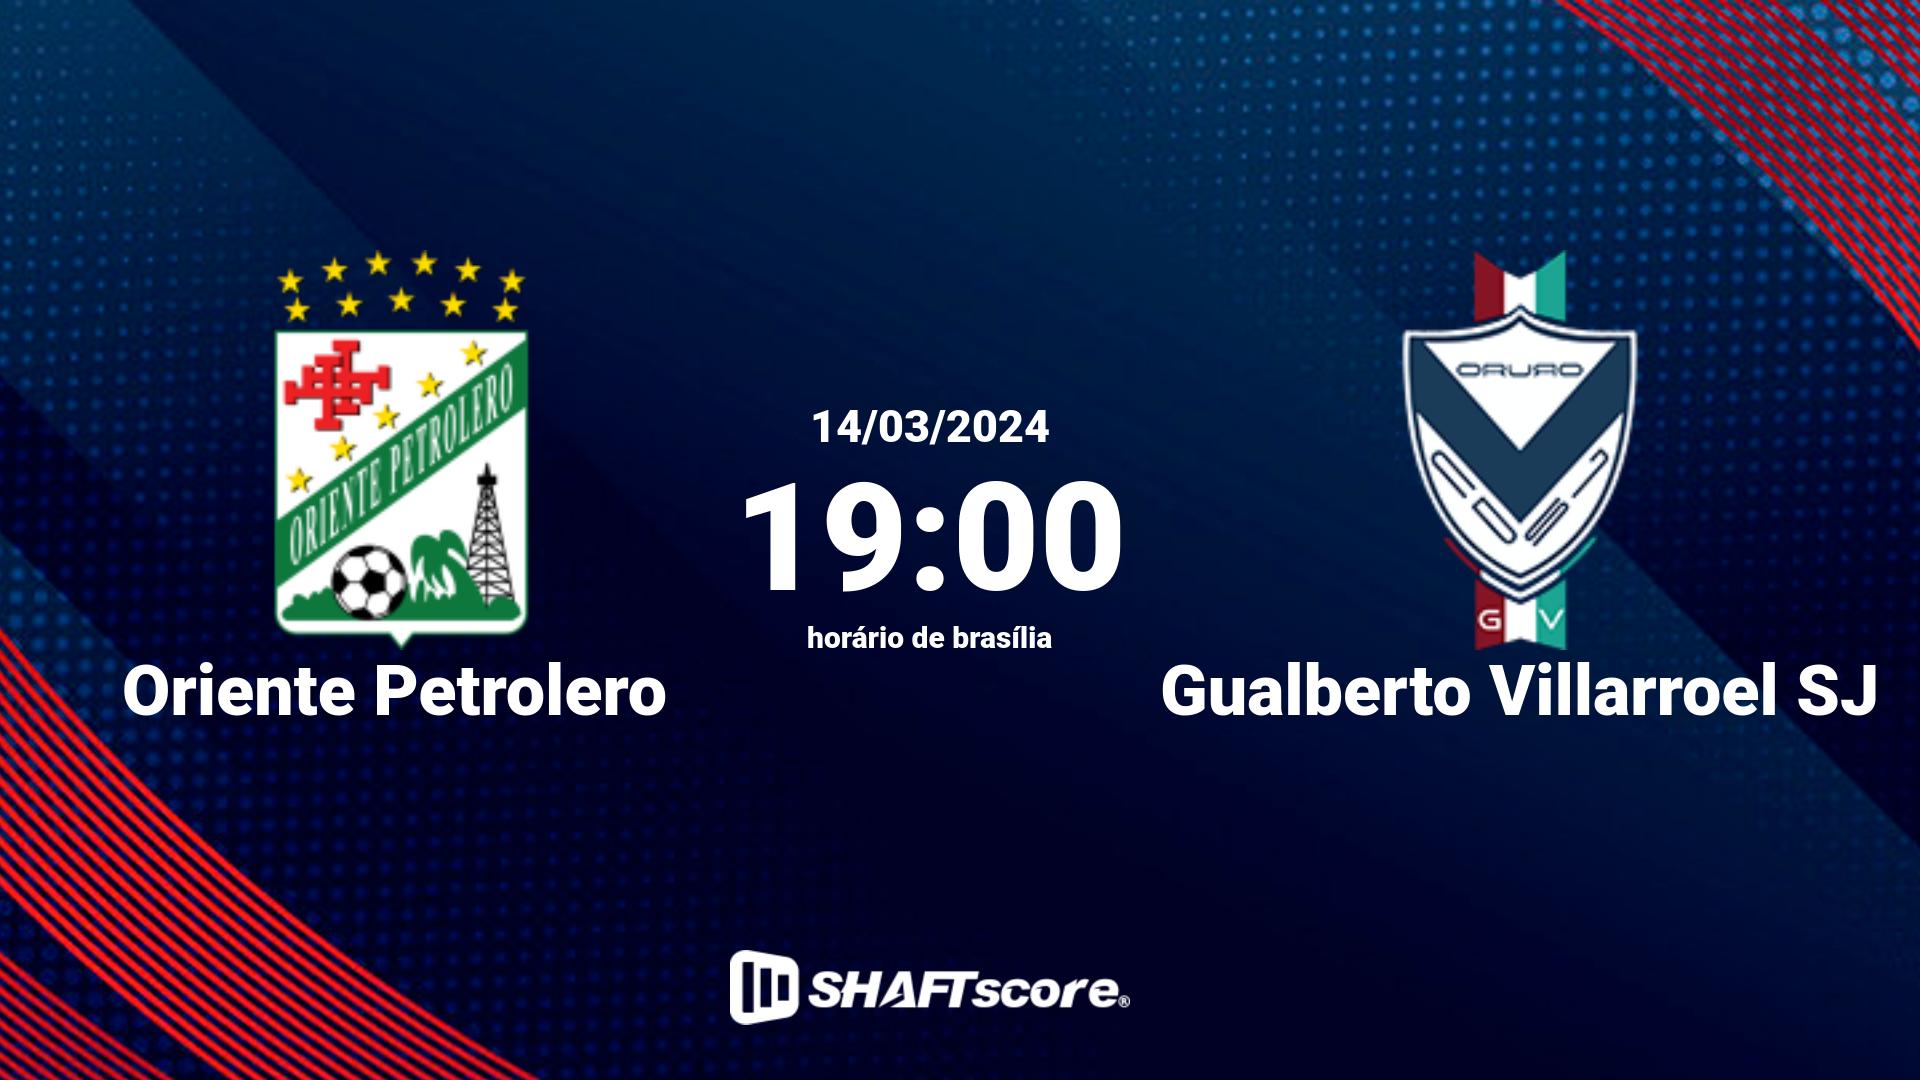 Estatísticas do jogo Oriente Petrolero vs Gualberto Villarroel SJ 14.03 19:00